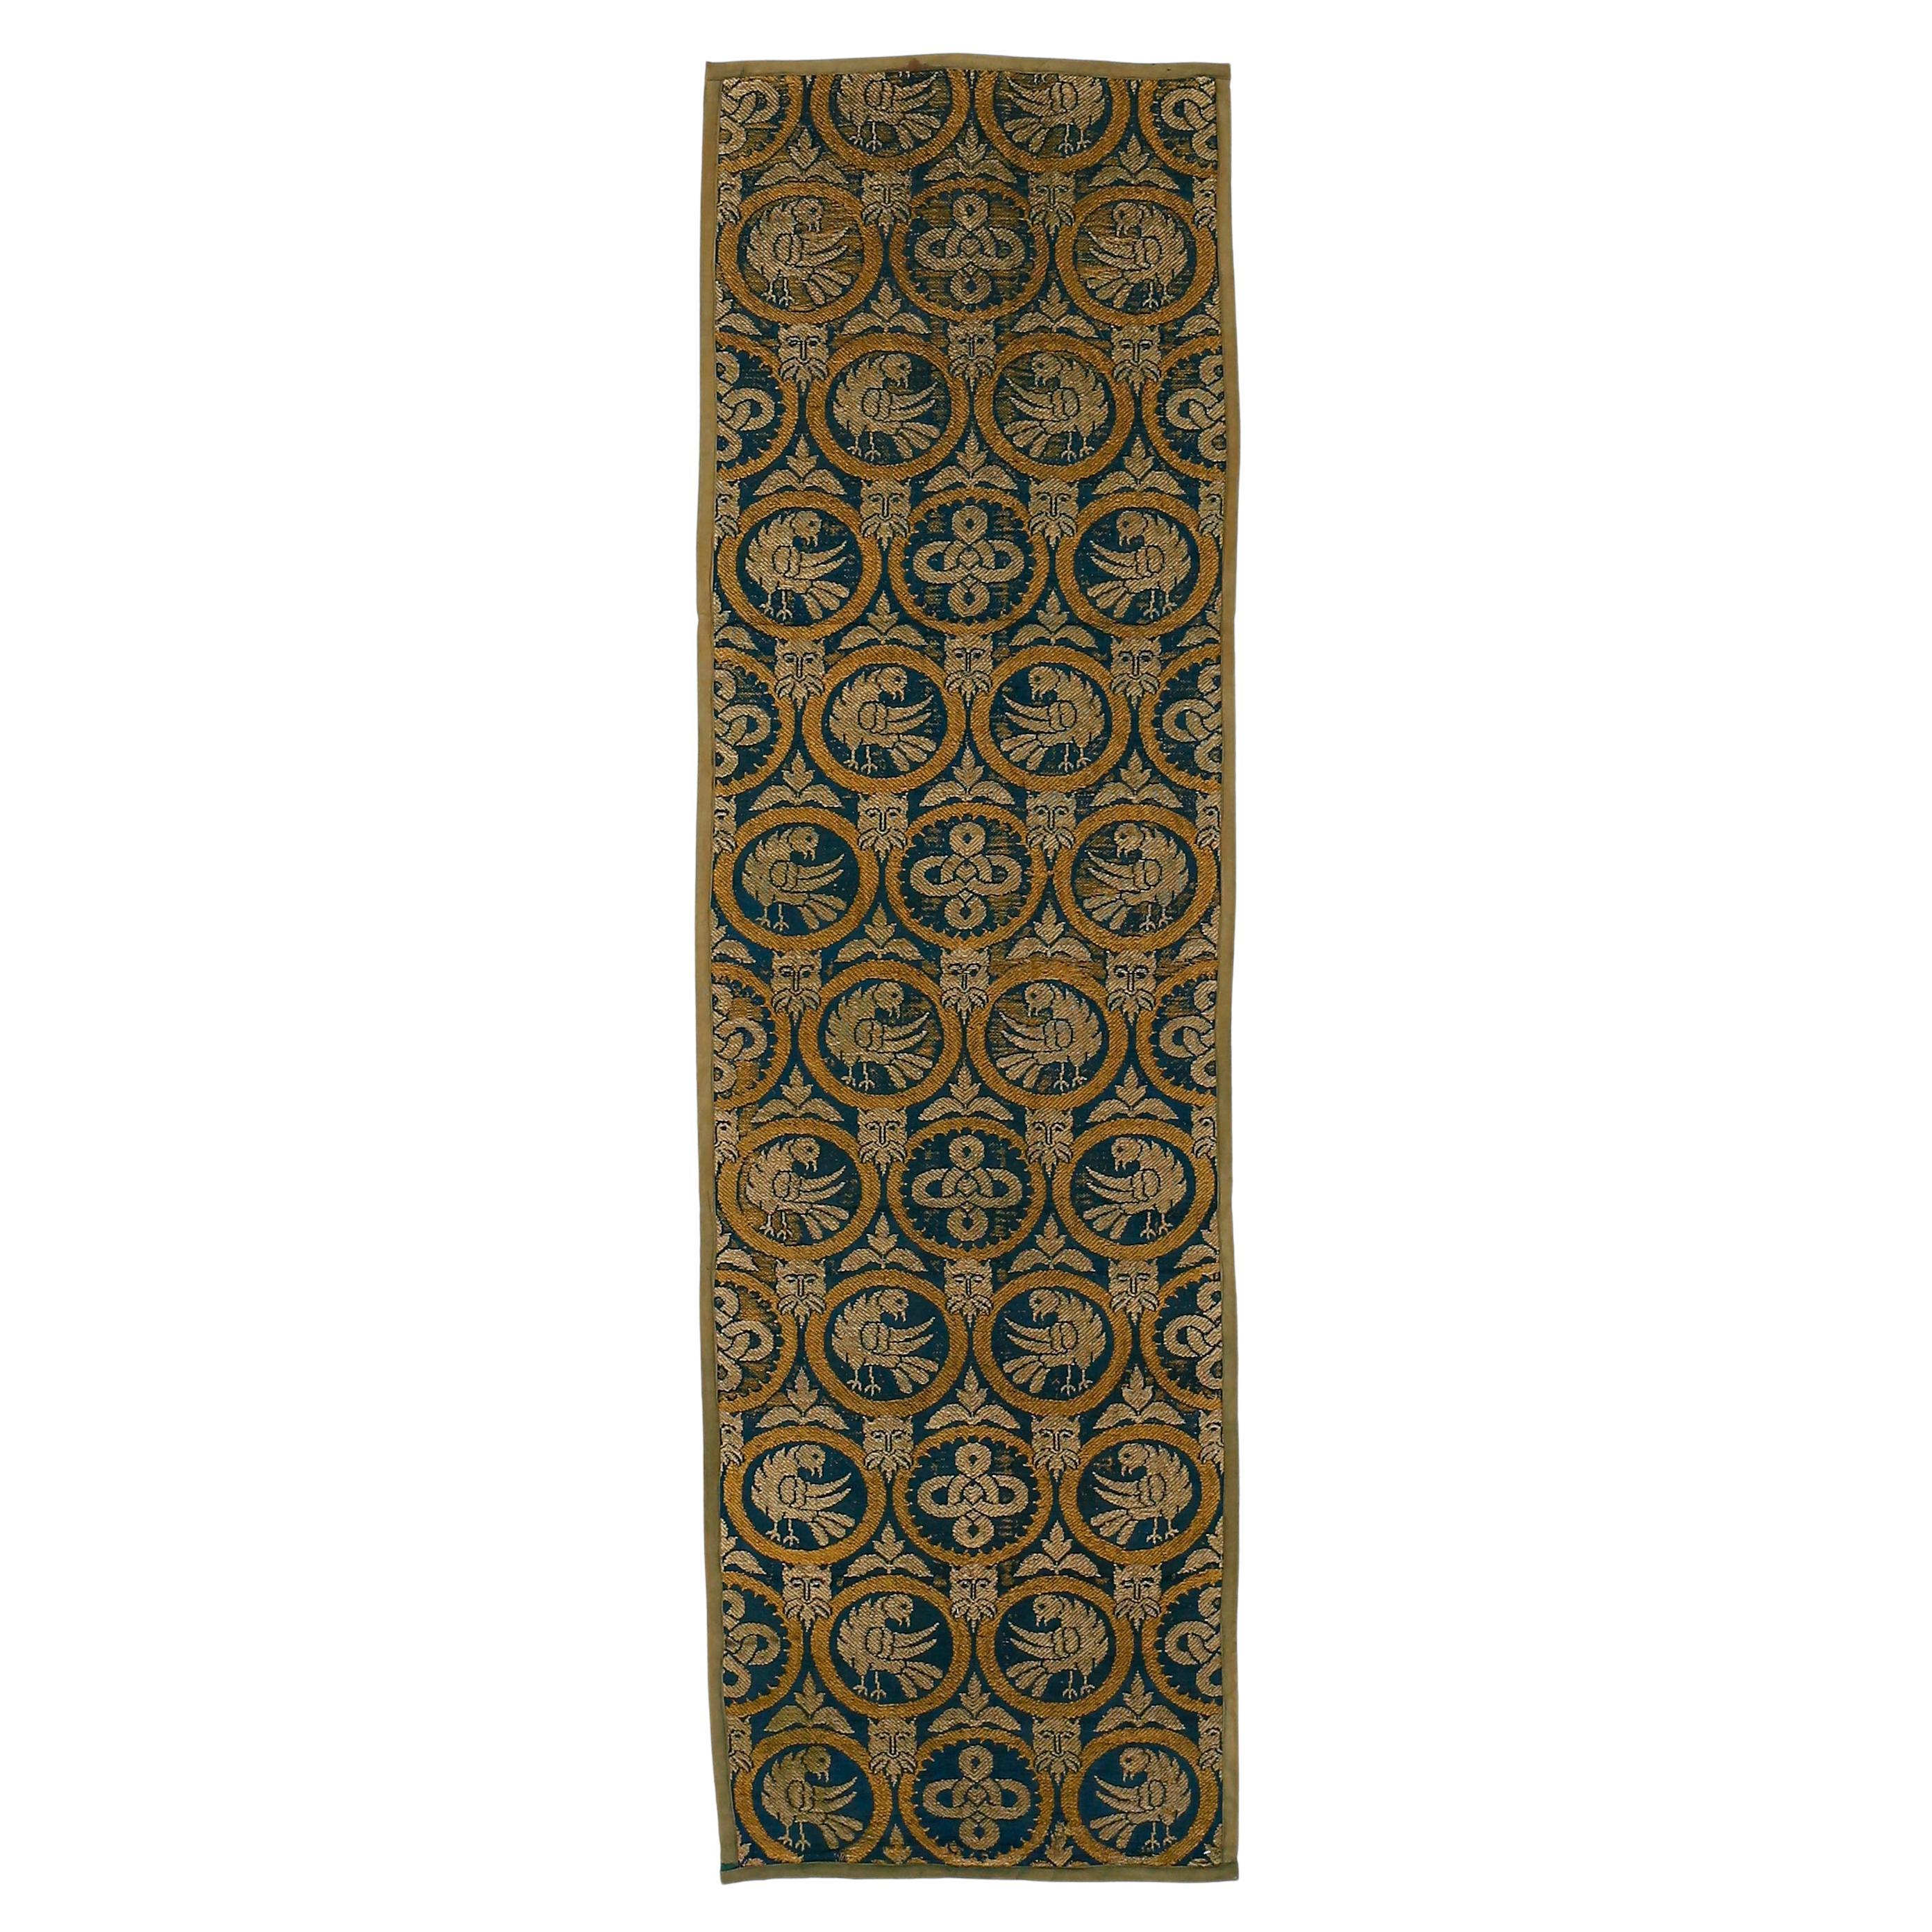 Seltene und frühe neogotische britische Arts &amp; Crafts-Textilien-Wandbehang